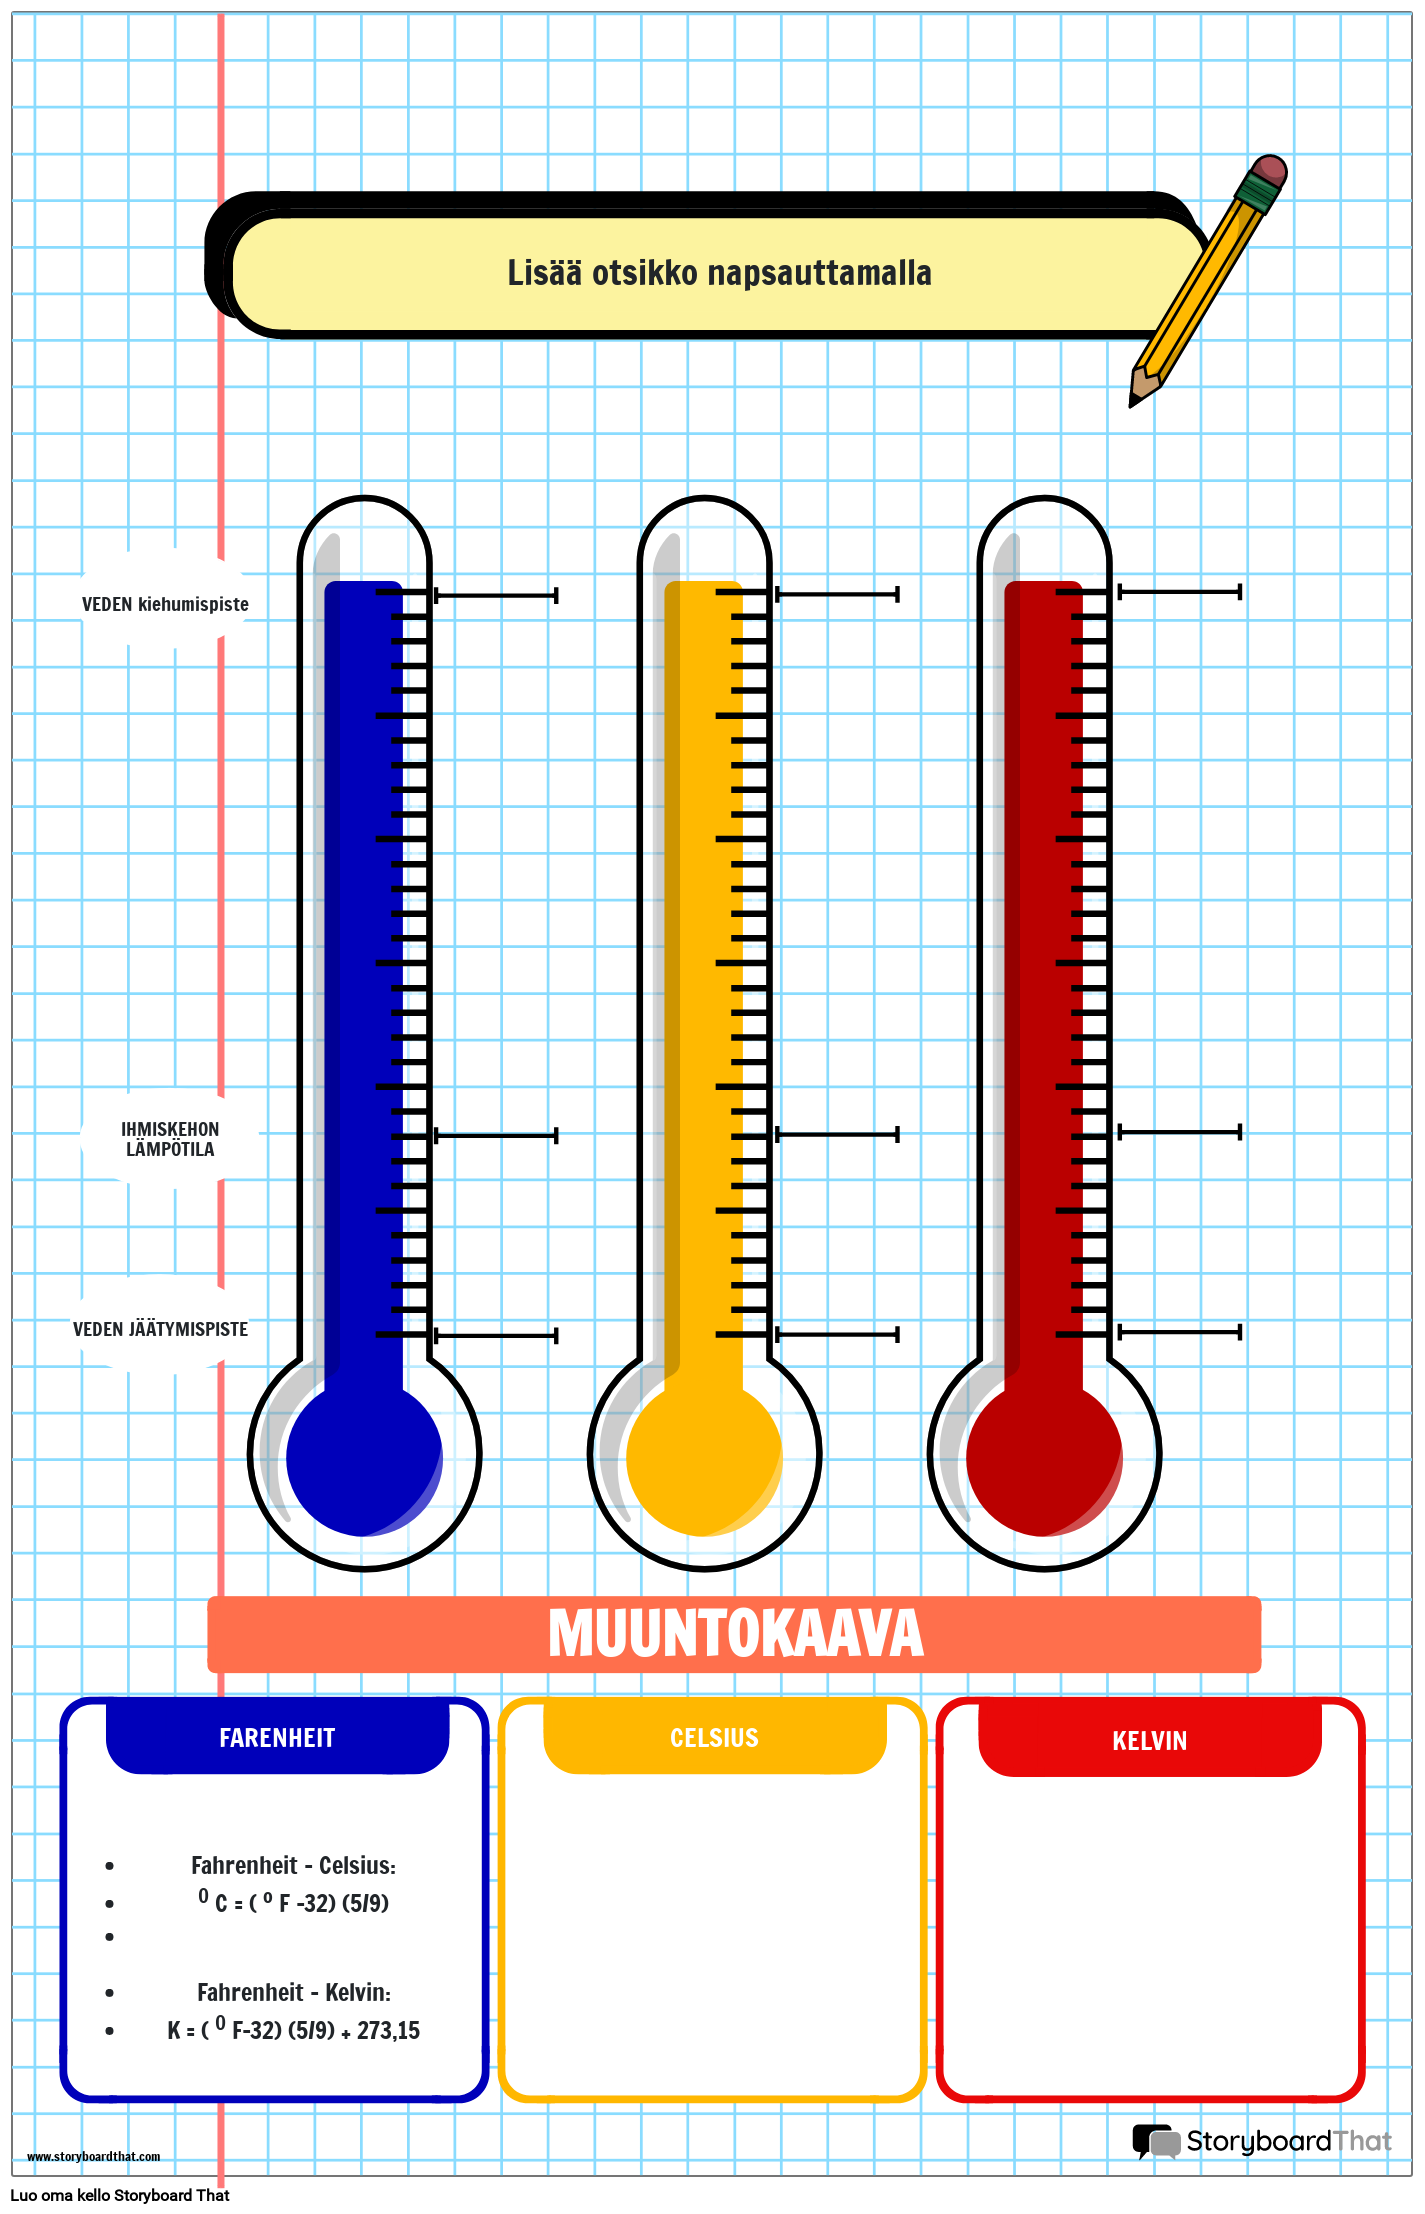 Muistikirja-aiheinen Lämpötilakaaviojuliste